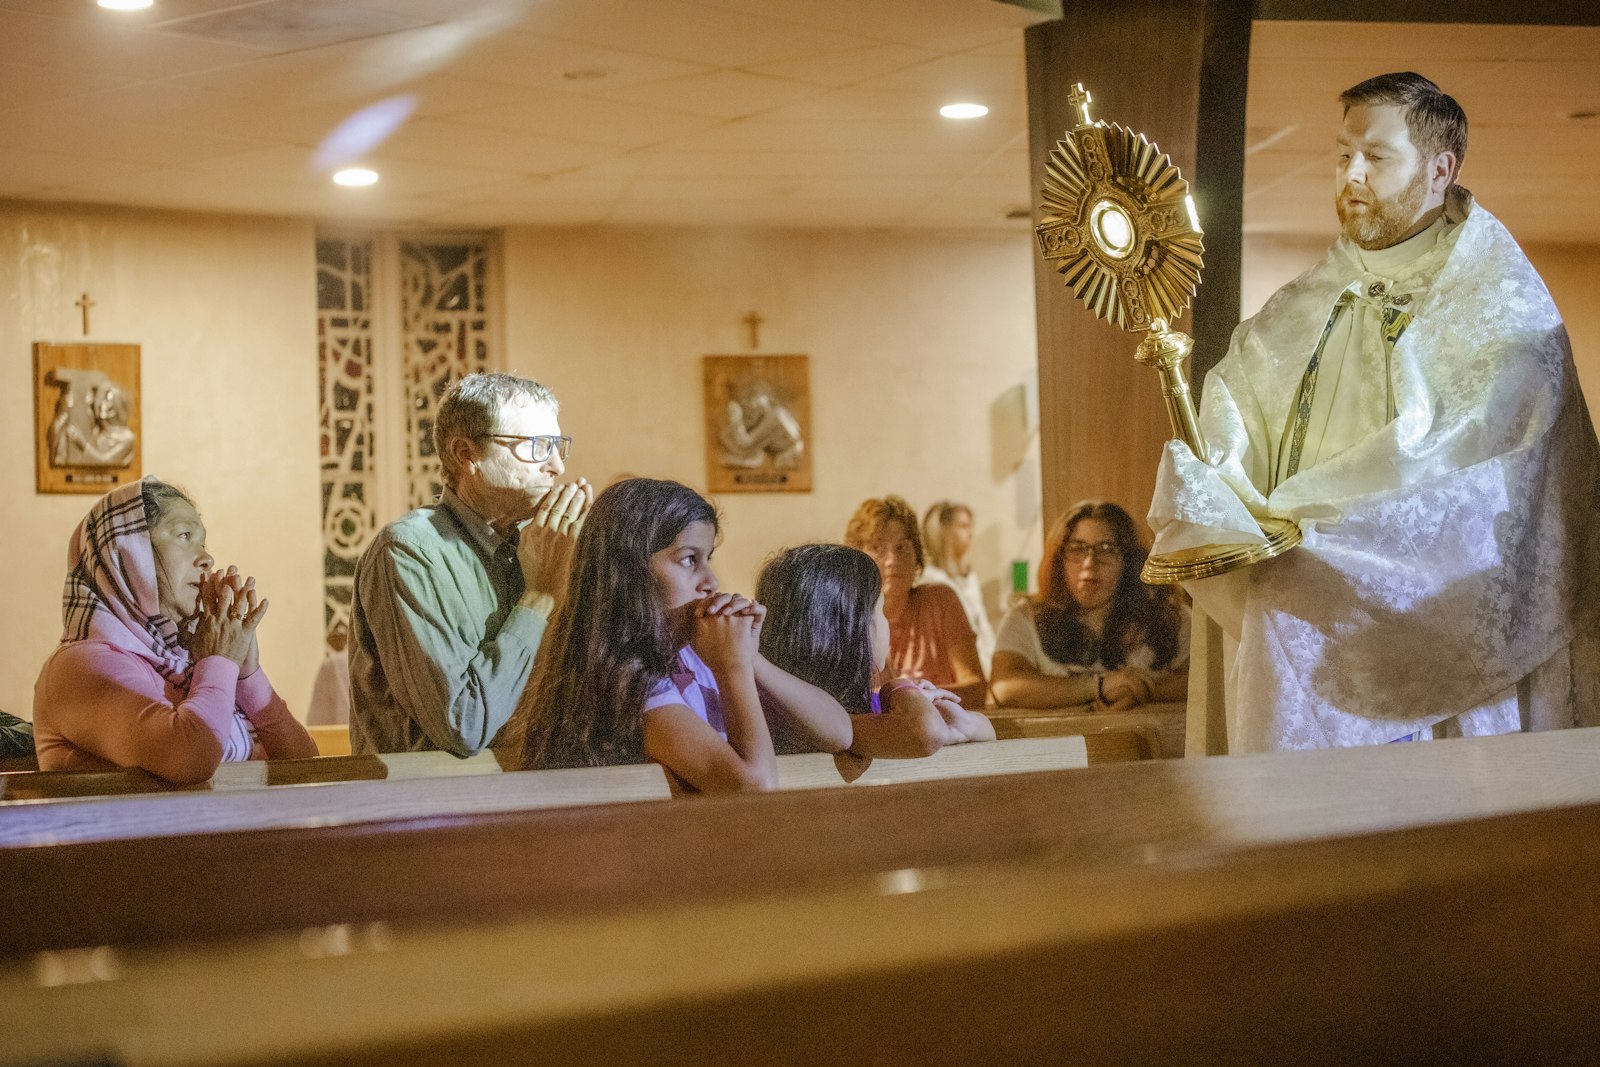 Padre Stephen Pullis sostiene una custodia donde lleva al Santísimo Sacramento bendiciendo a adolescentes y adultos reunidos en la parroquia de St. Ronald en el municipio de Clinton como parte de un evento especial "Ven, encuentra a Cristo" el 23 de octubre. (Alissa Tuttle | Especial para Detroit Catholic)